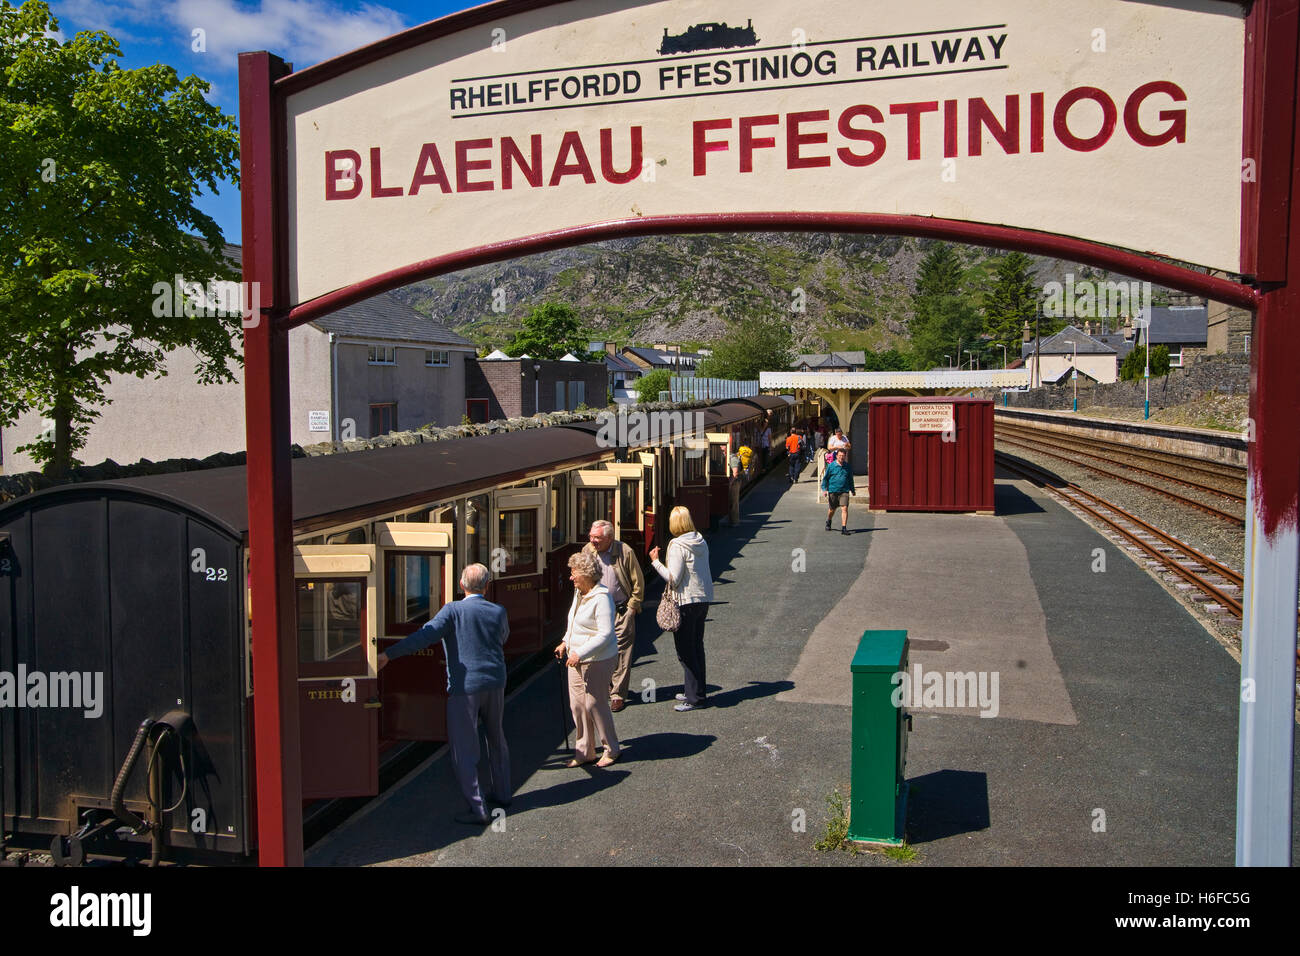 Ffestiniog railway Station, Blaenau Ffestiniog, Snowdonia, north Wales Stock Photo